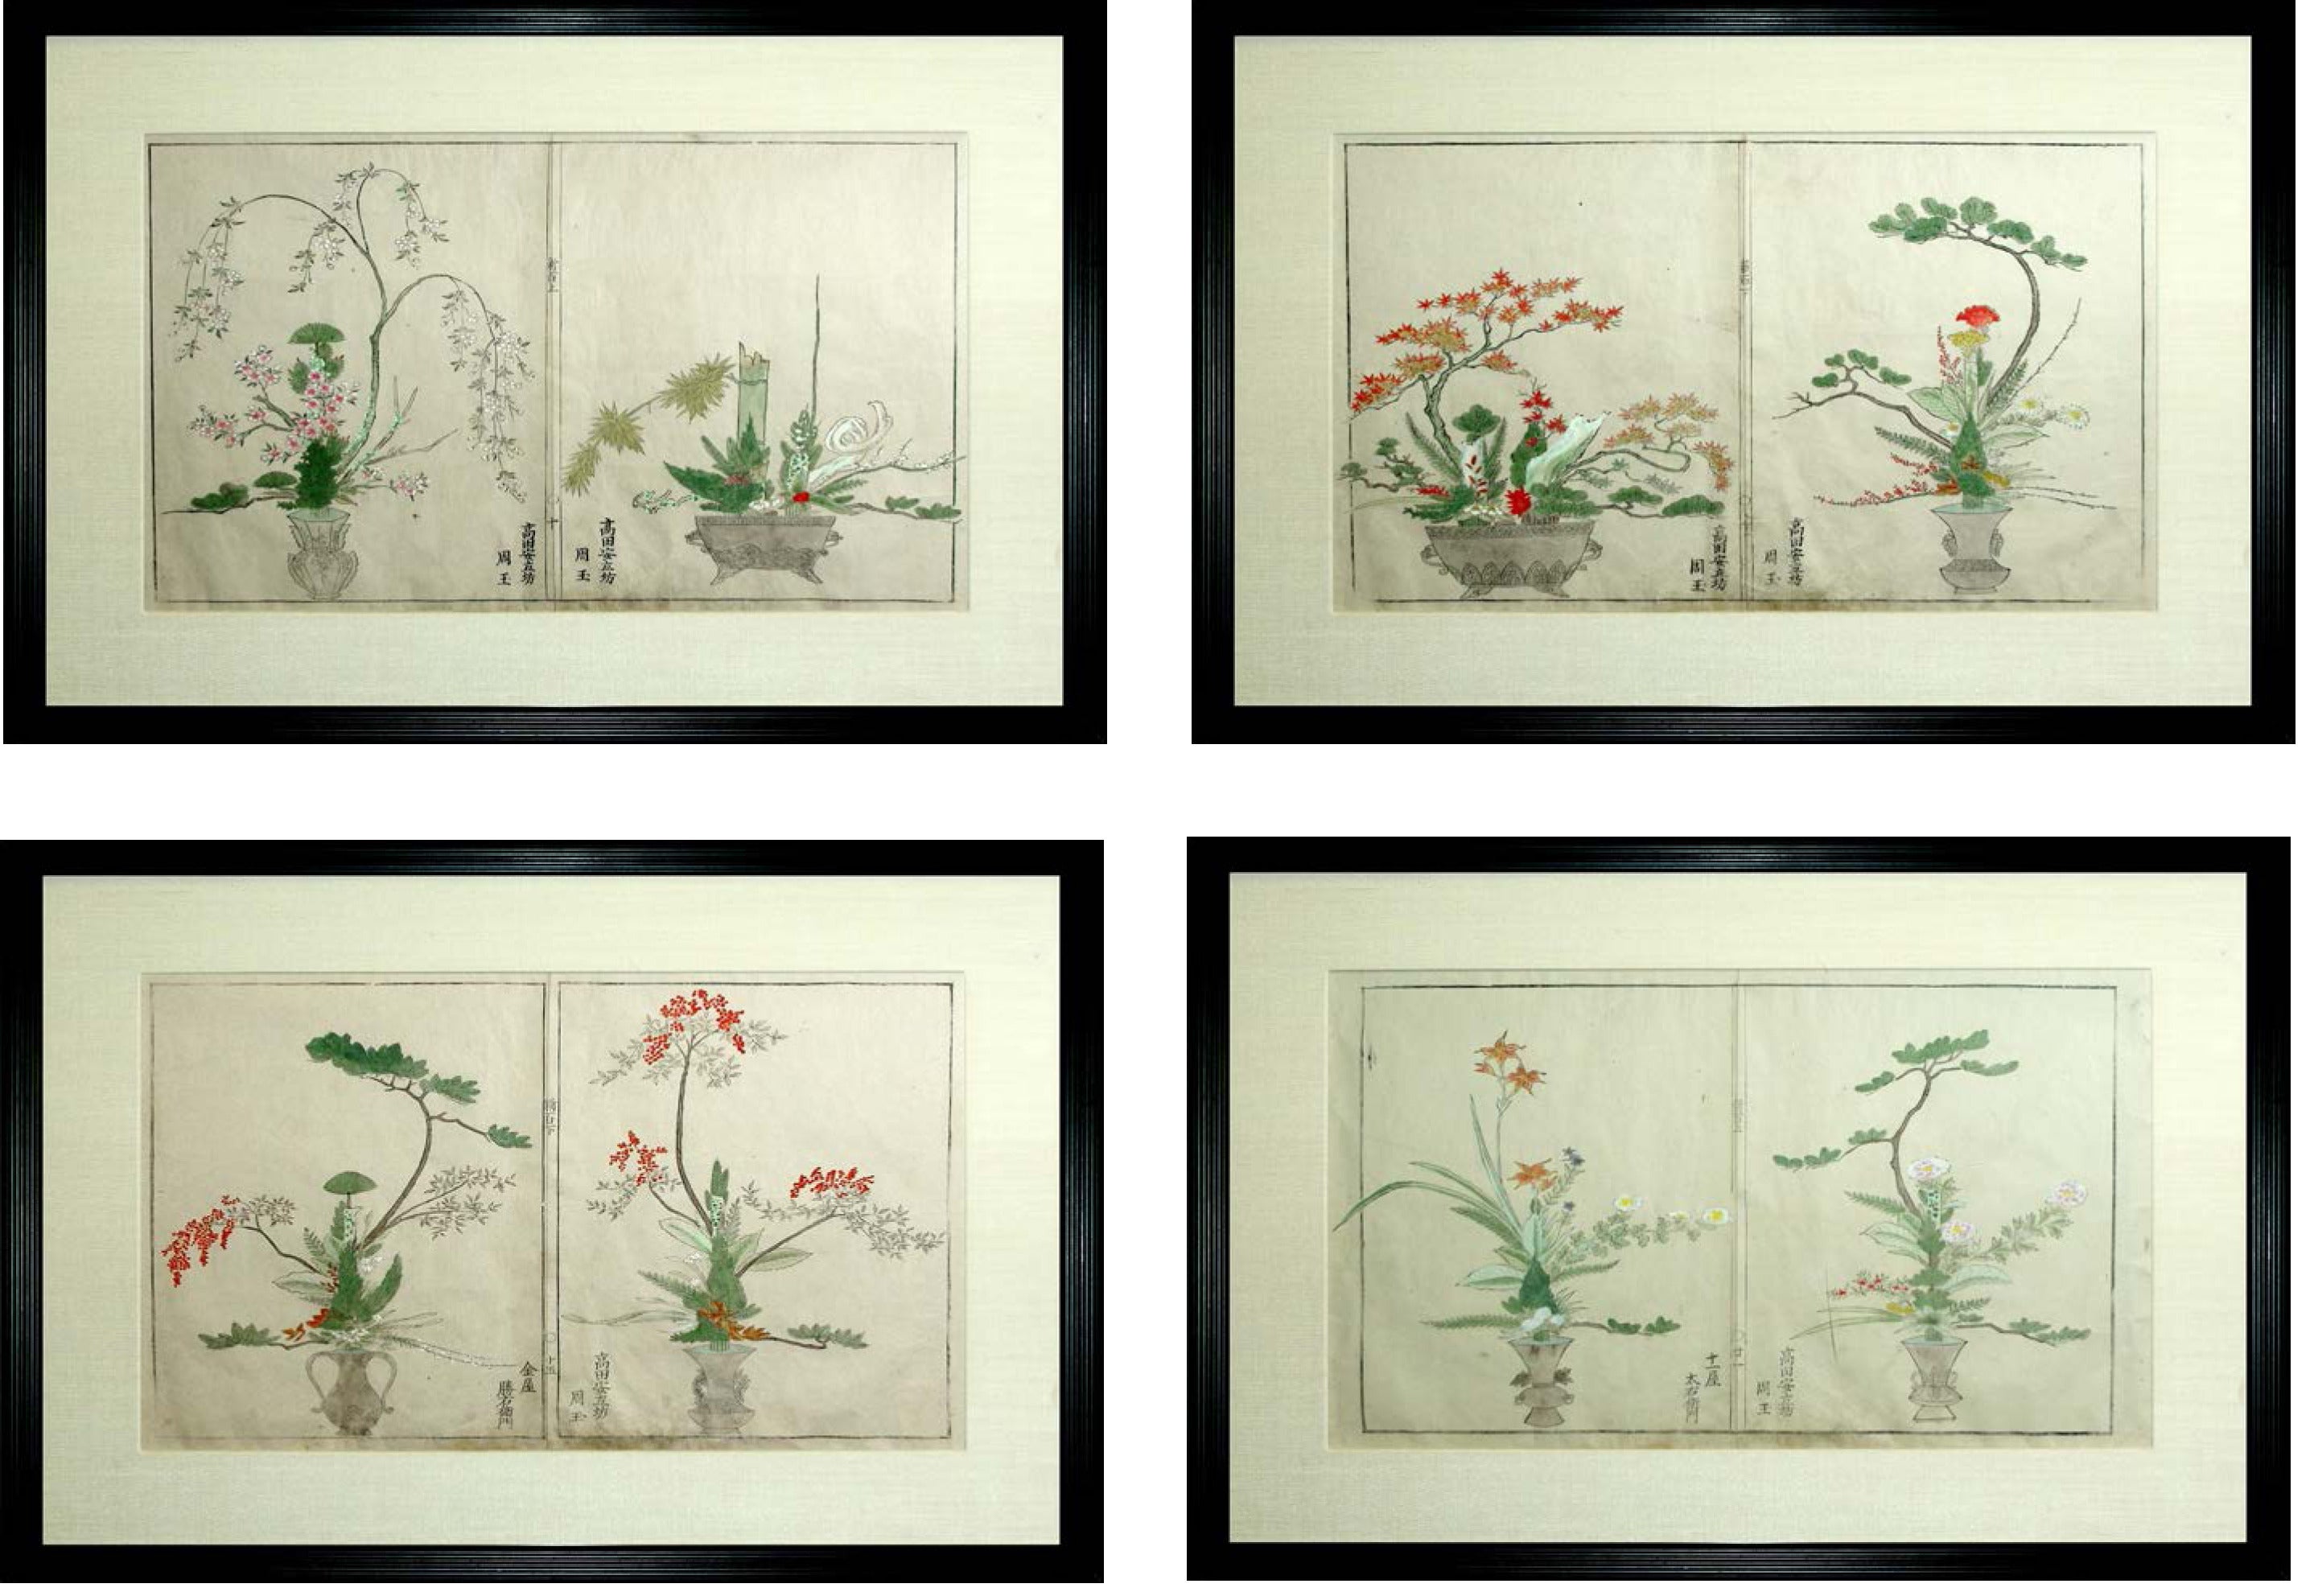 Four Representative Flower Arranging Composition, Japanese, circa 1725